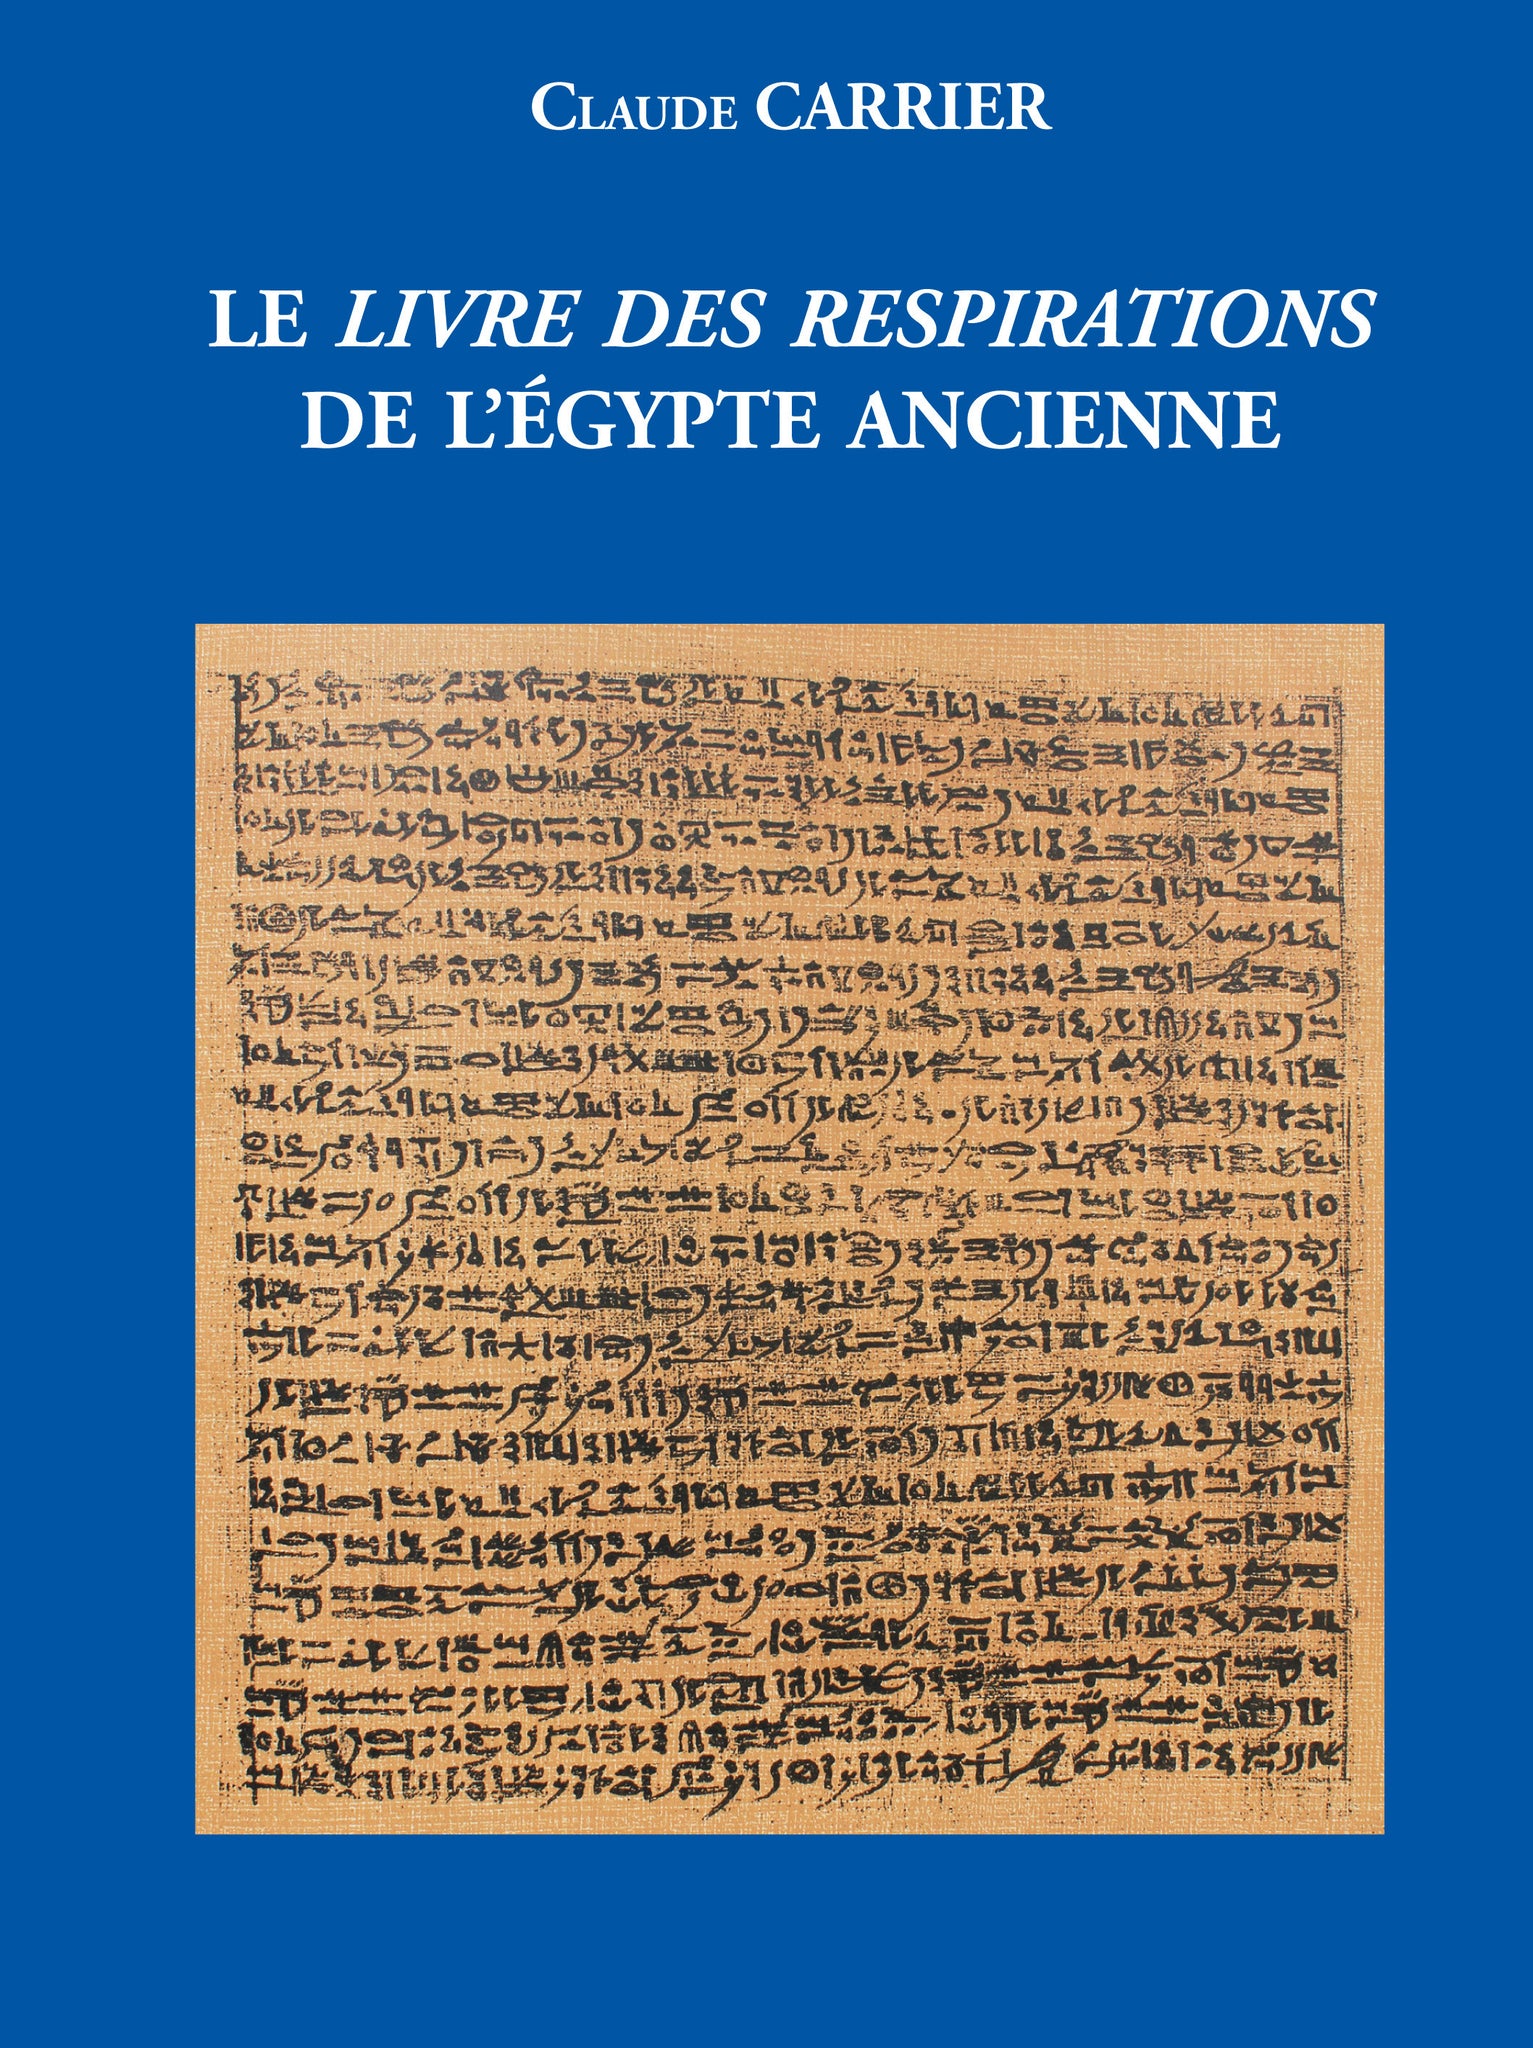 Le Livre des Respirations de l'Egypte ancienne.